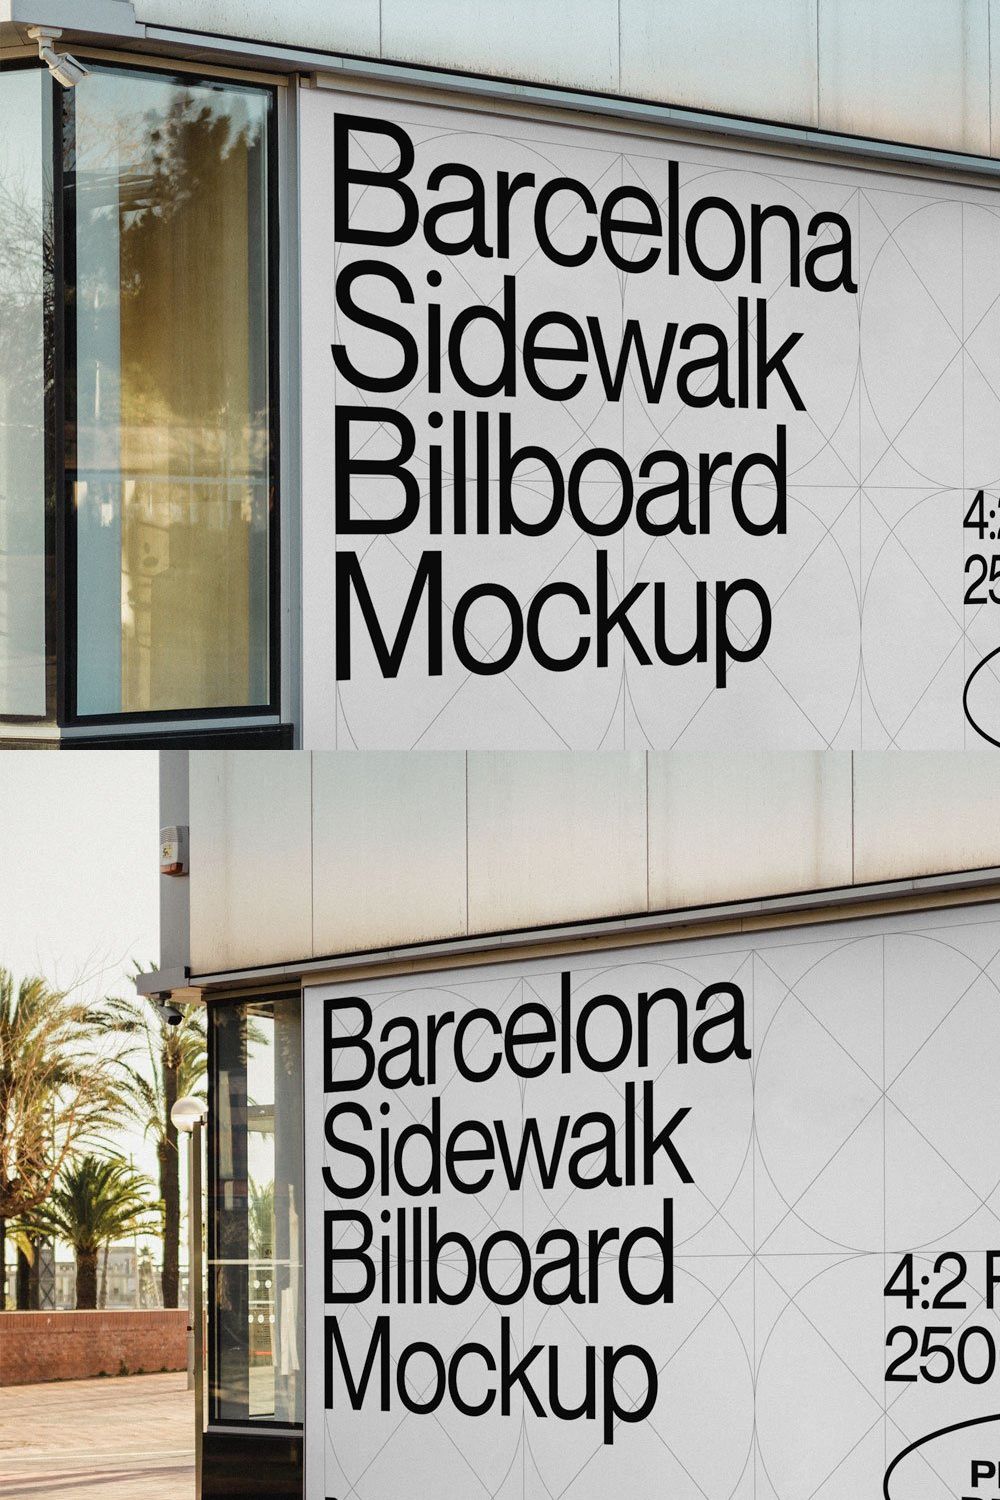 Barcelona Billboard Mockup pinterest preview image.